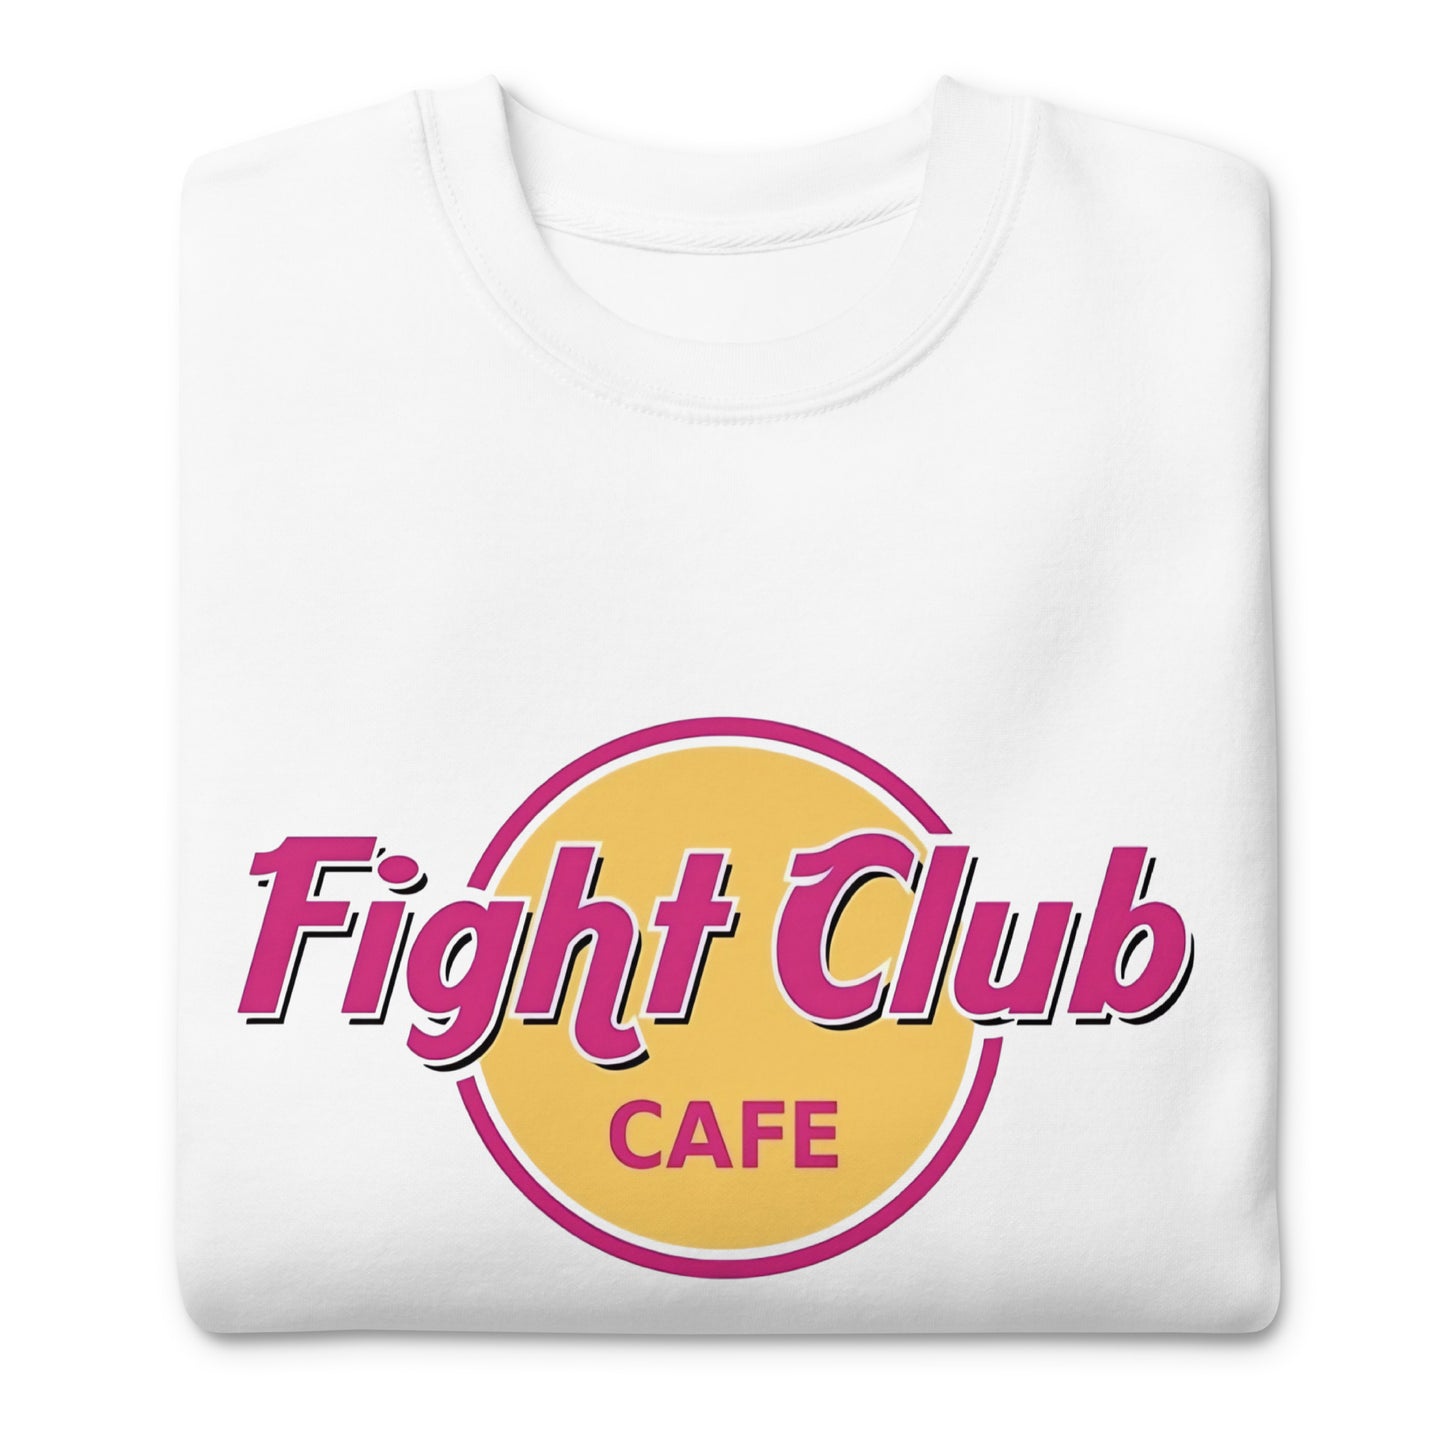 Sudadero Fight Club Cafe, Disponible en Superstar, la mejor tienda online para comprar tu merch favorita, la mejor Calidad, compra Ahora en Superstar!